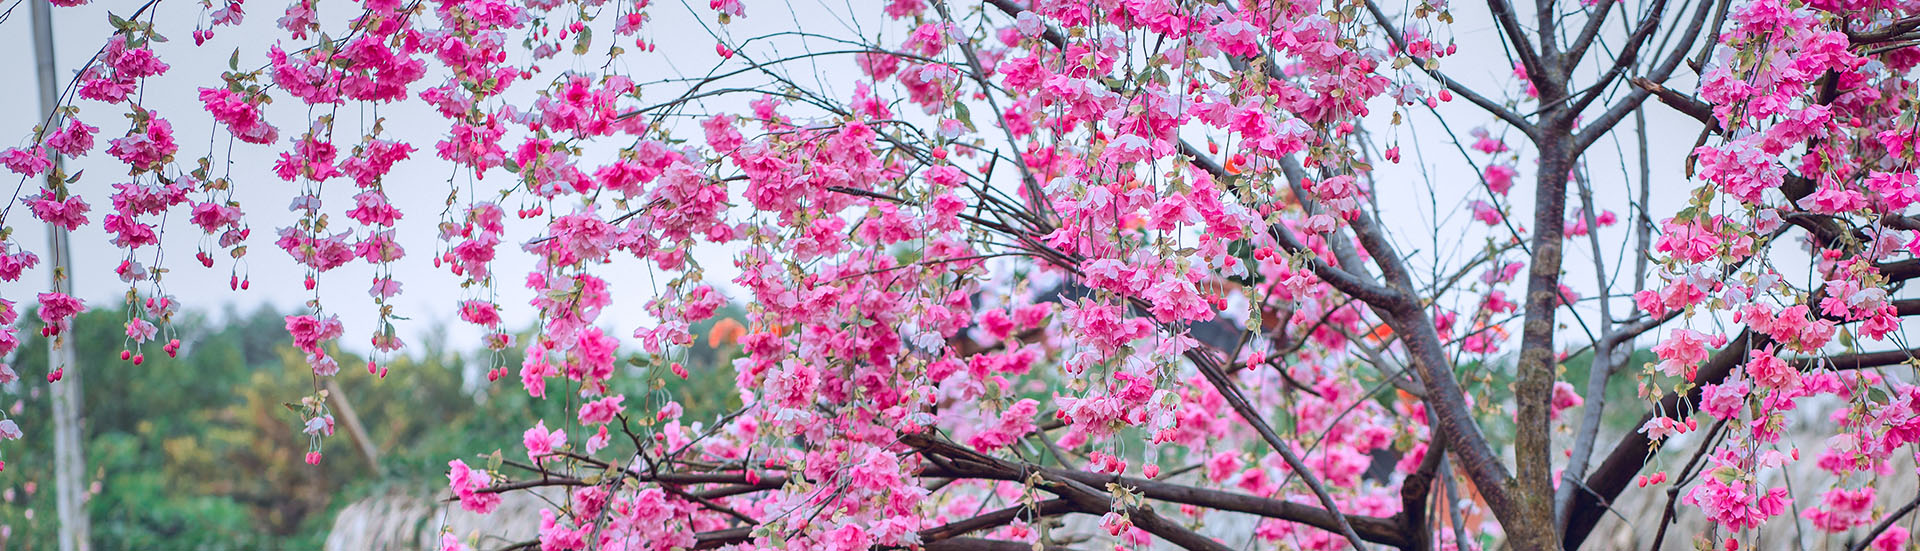 Kirschblütenbaum im asiatischen Garten